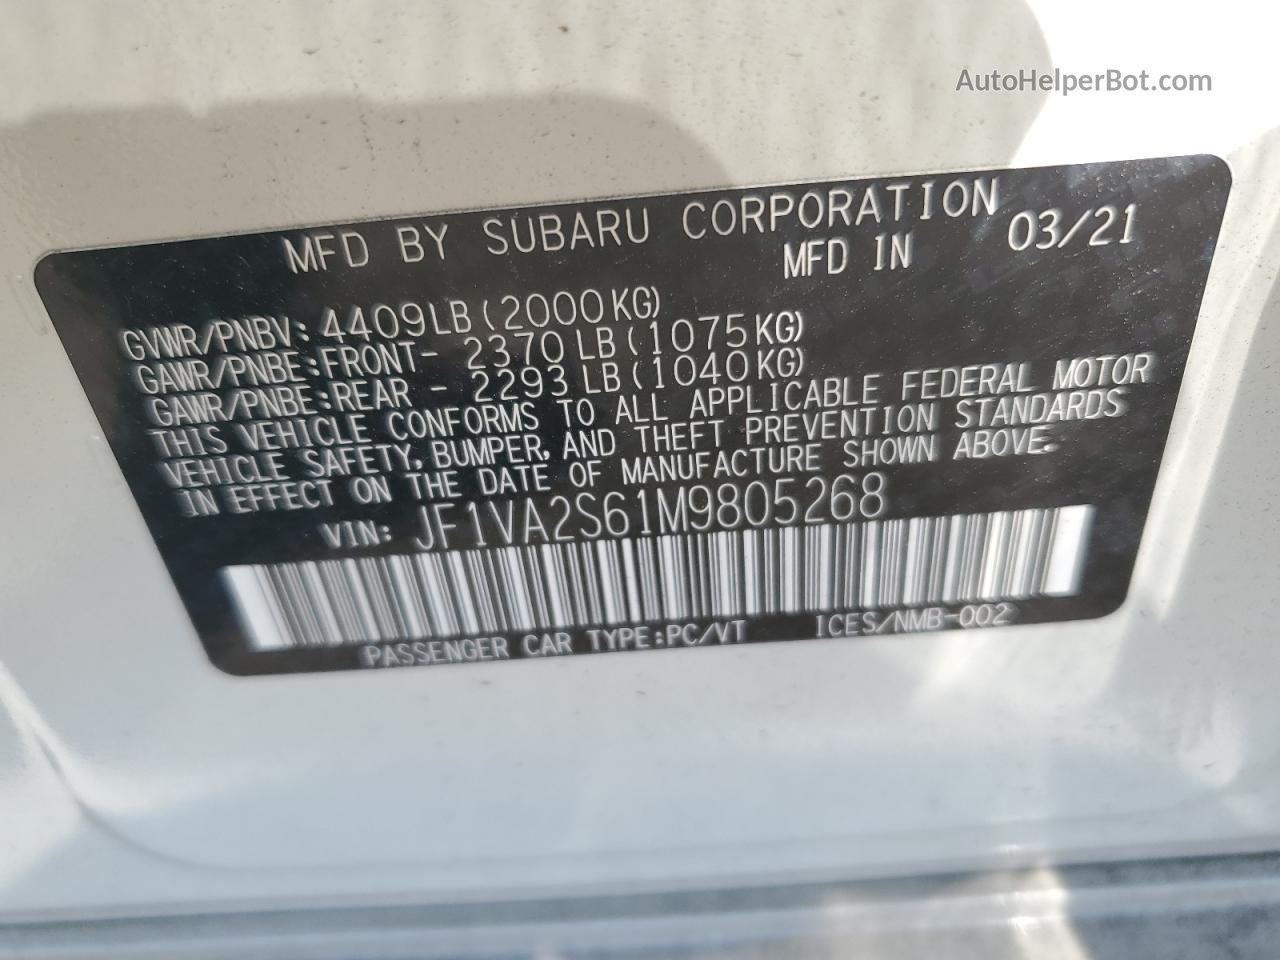 2021 Subaru Wrx Sti White vin: JF1VA2S61M9805268